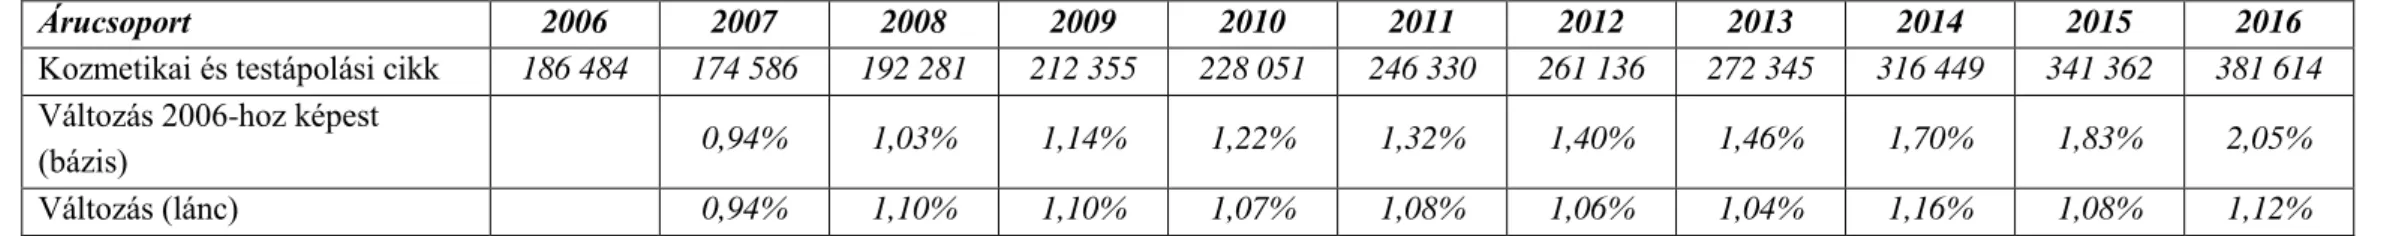 3. táblázat: A kiskereskedelmi eladási forgalom a kozmetikai és testápolási árucsoport tekintetében Magyarországon (2006-), MFt 